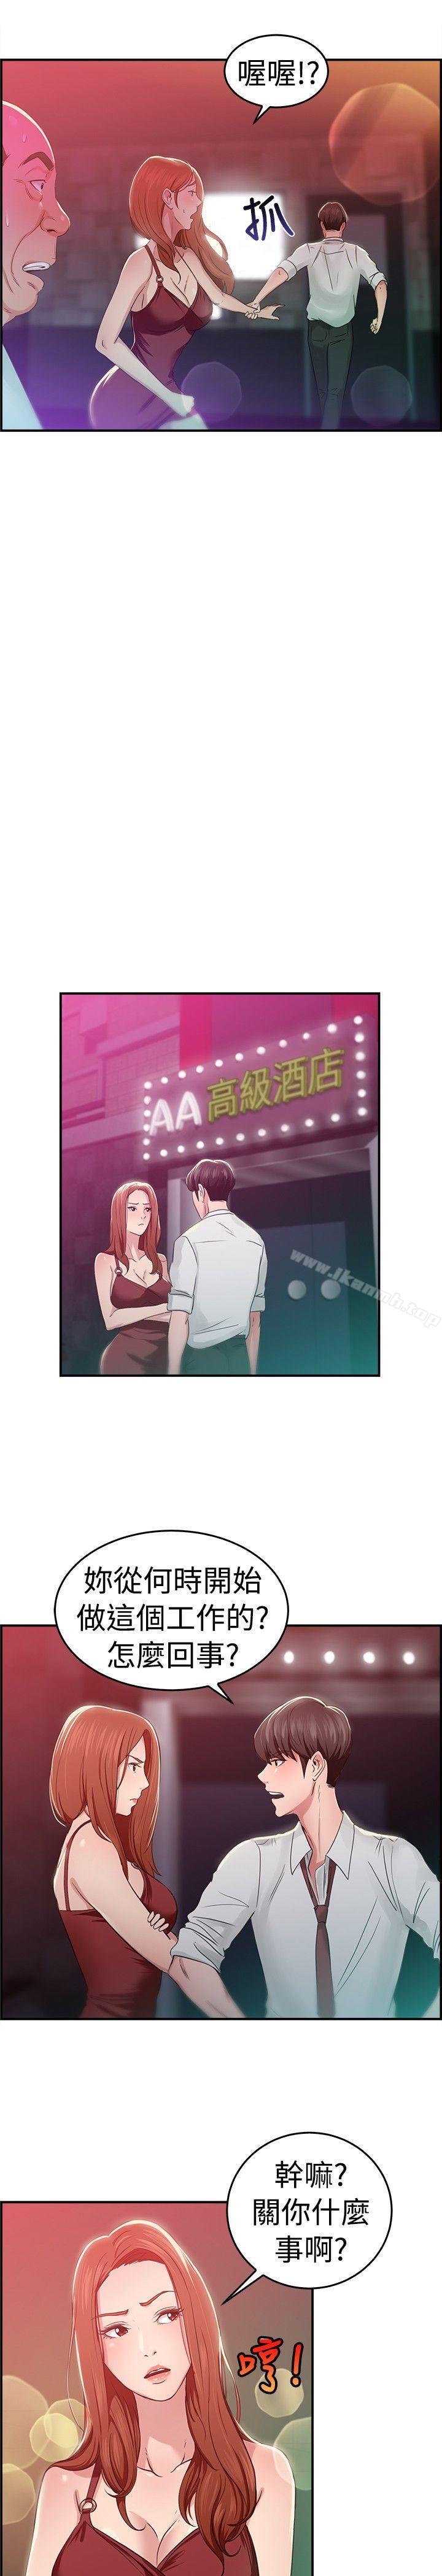 《前男友前女友(完結)》在线观看 第40话六千元买前女友(上) 漫画图片14